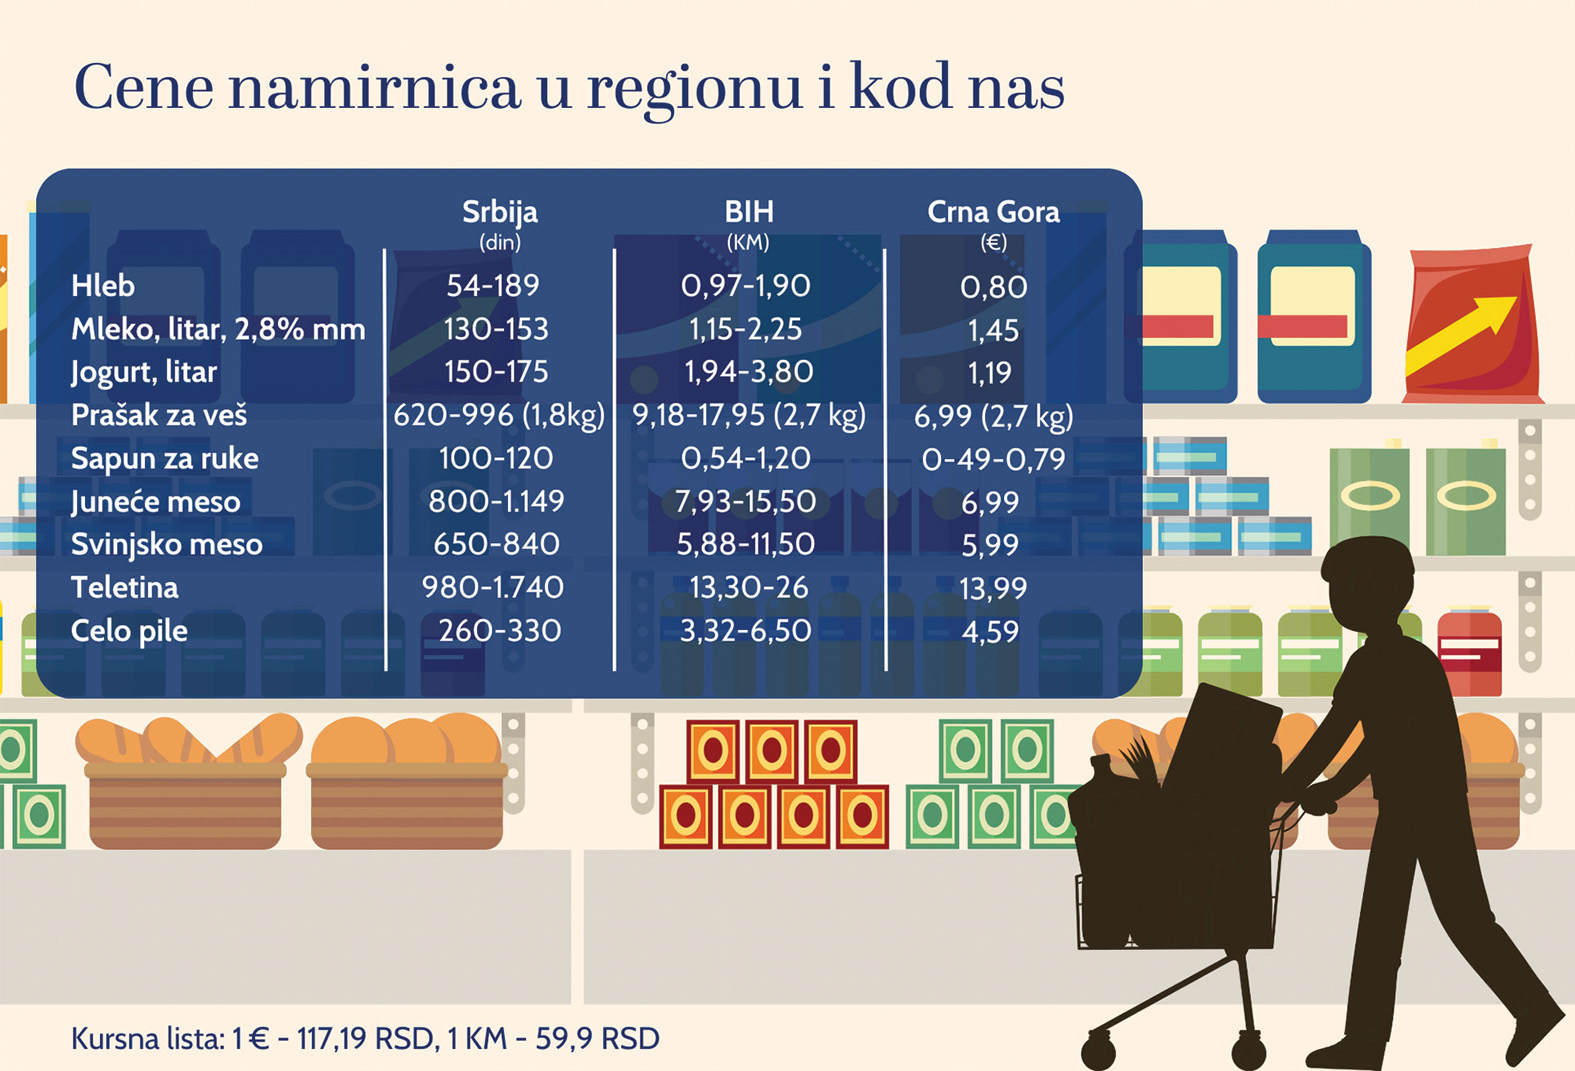 Vlasti nikad uspešnije, narod nikad siromašniji: Koliko se razlikuju cene osnovnih životnih namirnica u zemljama regiona? 2